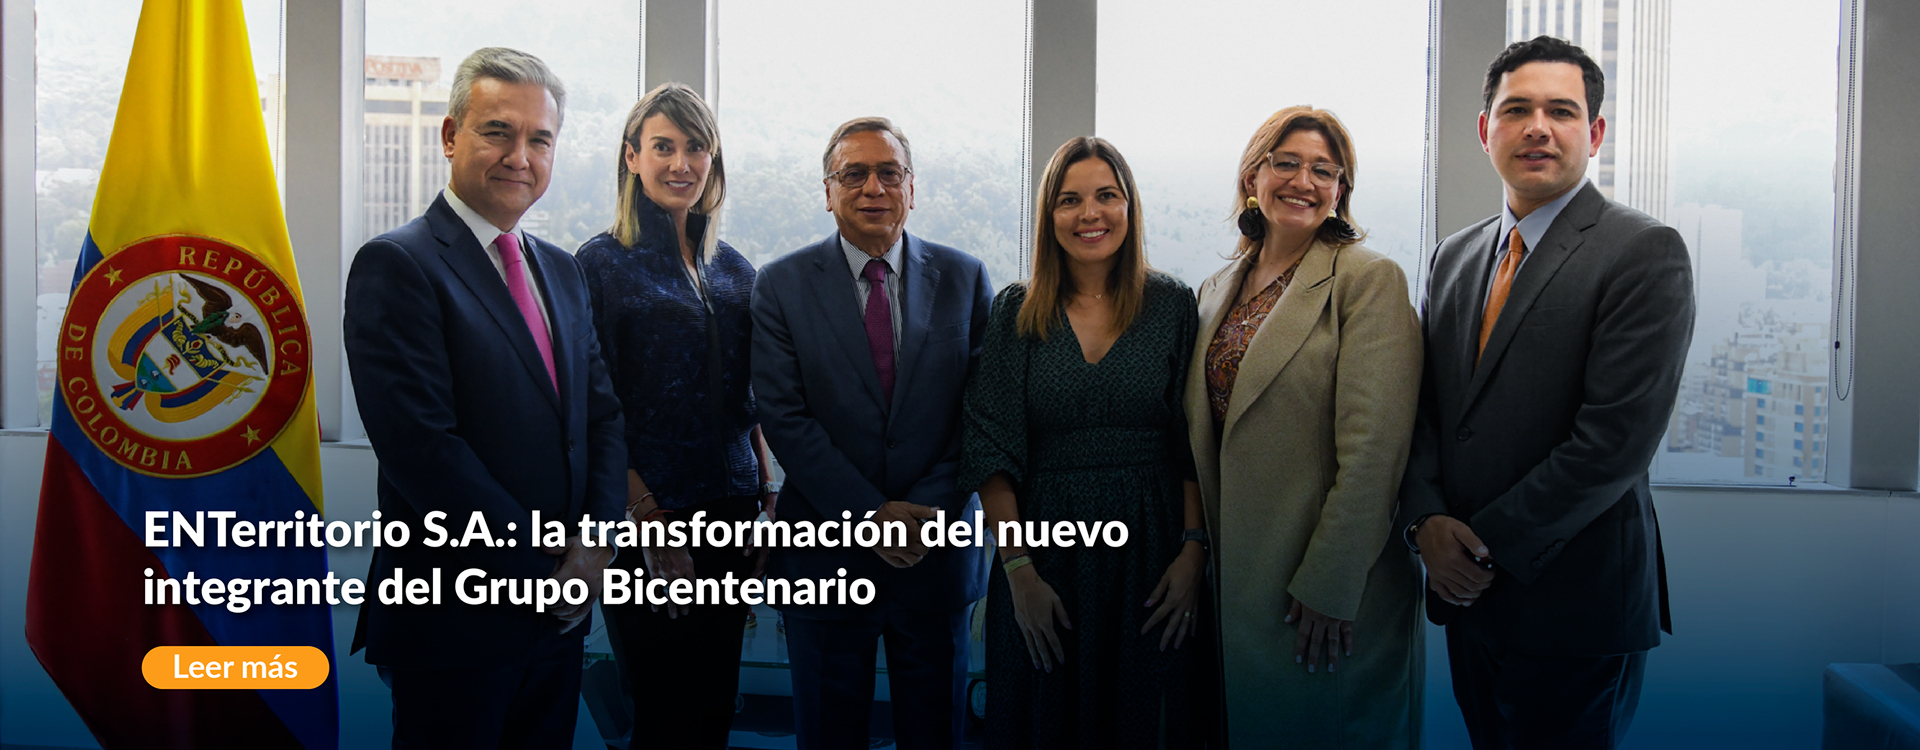 ENTerritorio S.A.: la transformación del nuevo integrante del Grupo Bicentenario